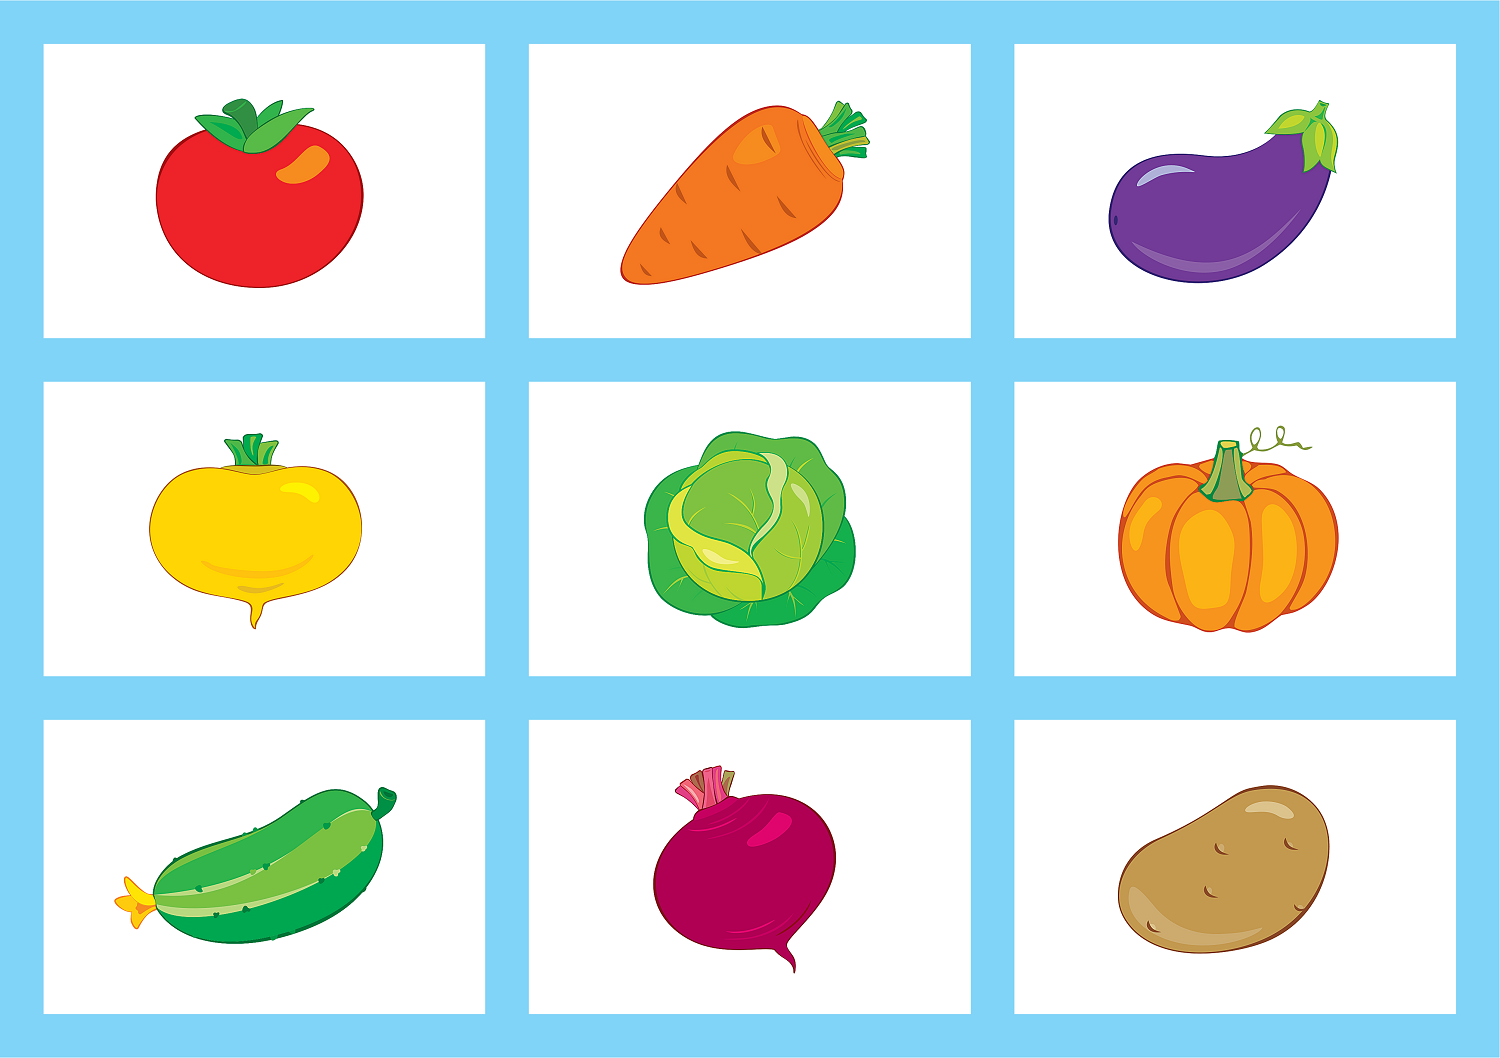 Овощи и фрукты для детей. Карточки овощей и фруктов для детей. Карточки с изображением овощей. Карточки овощи для малышей. Vegetables game